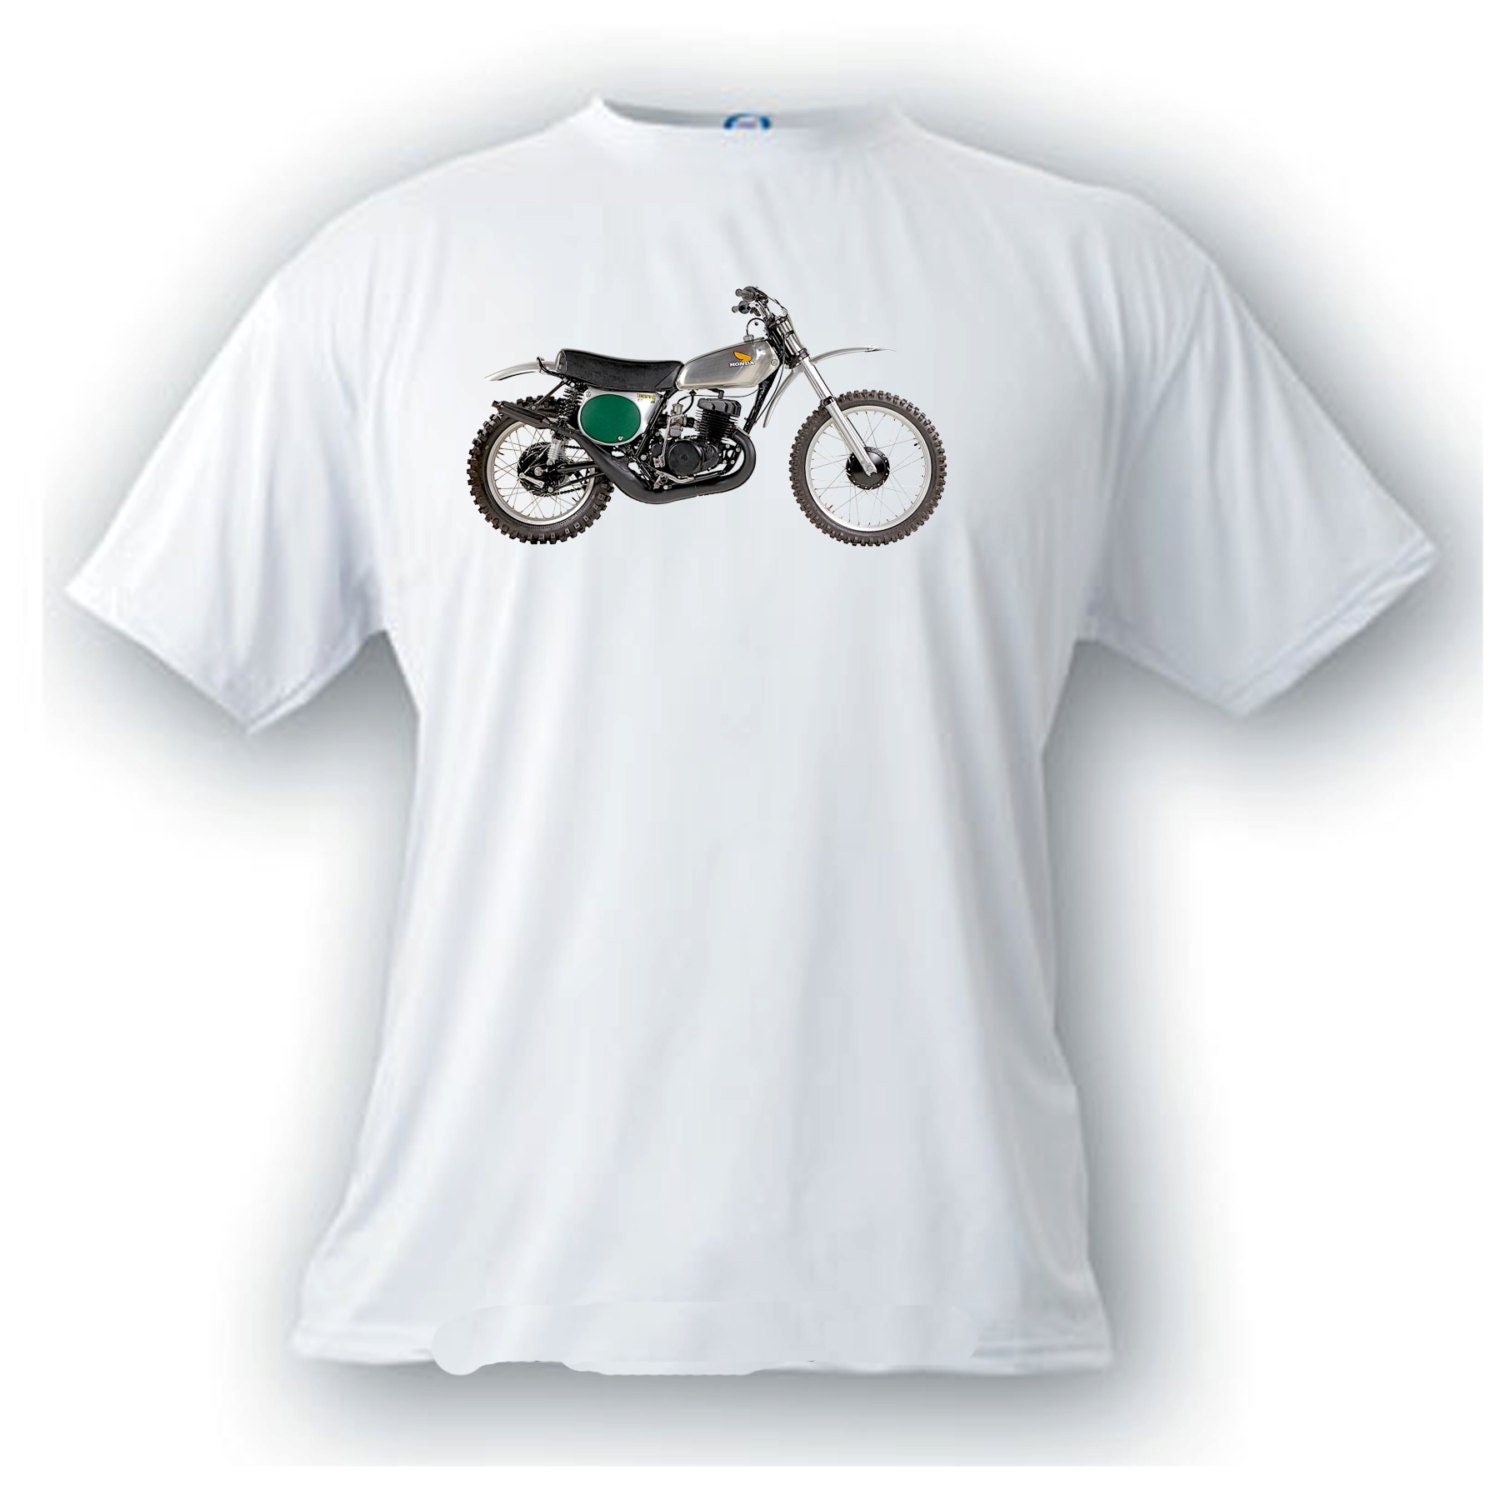 honda dirt bike shirts